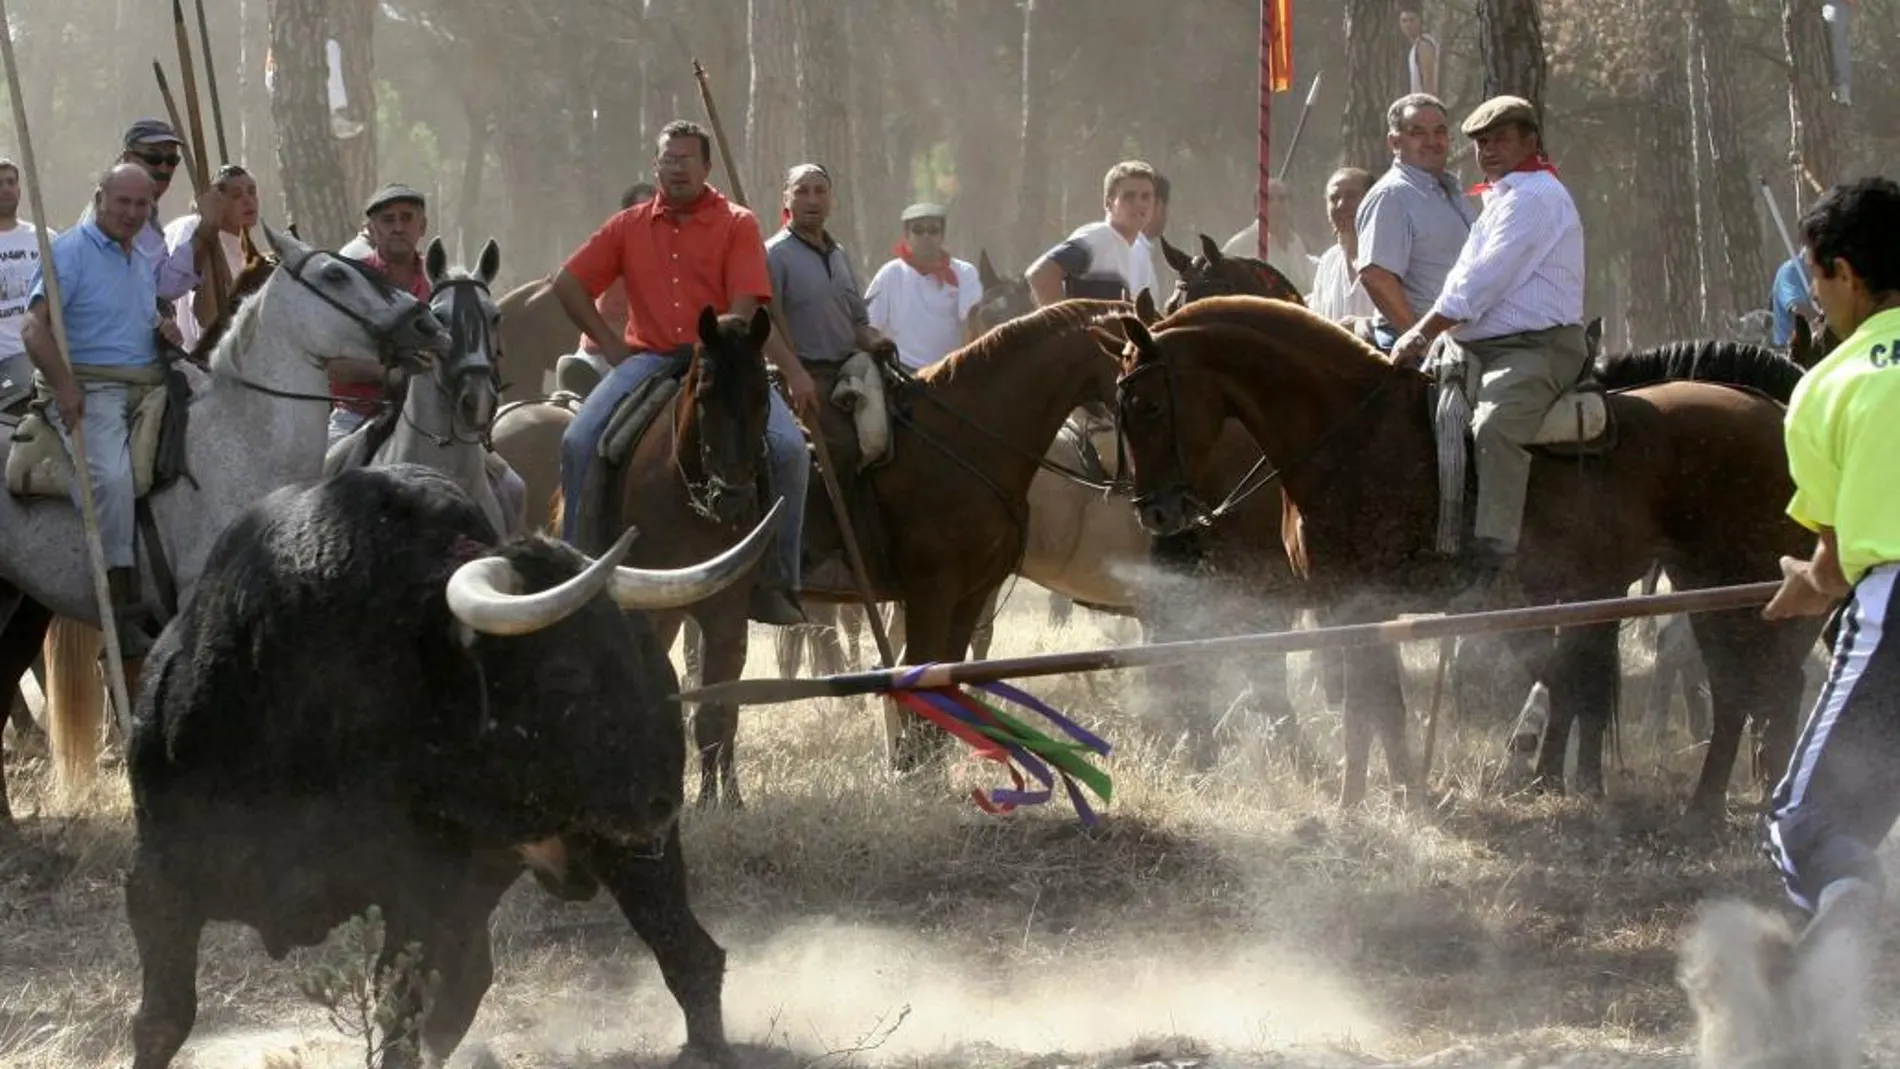 Fotografía de archivo tomada en Valladolid el 12/09/06 de la celebración del Toro de la Vega, en Tordesillas (Valladolid).